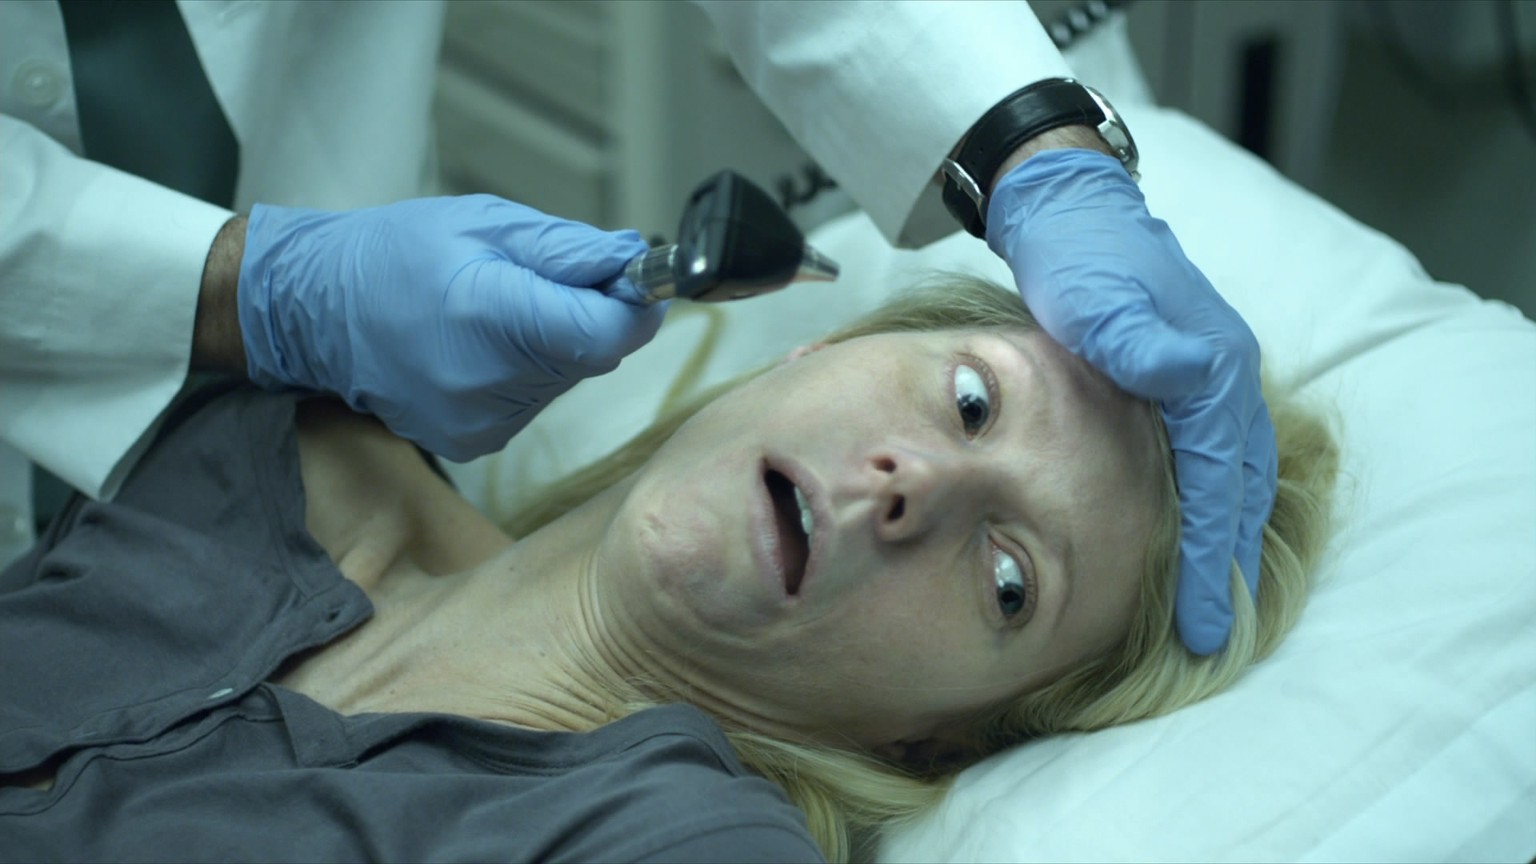 Schon in «Contagion» zeigt Gwyneth Paltrow einen grossen Ekel vor Ärzten. Dabei wär alles nicht so schlimm gekommen, wenn sie rechtzeitig zum Dokotor gegangen wäre!<br data-editable="remove">